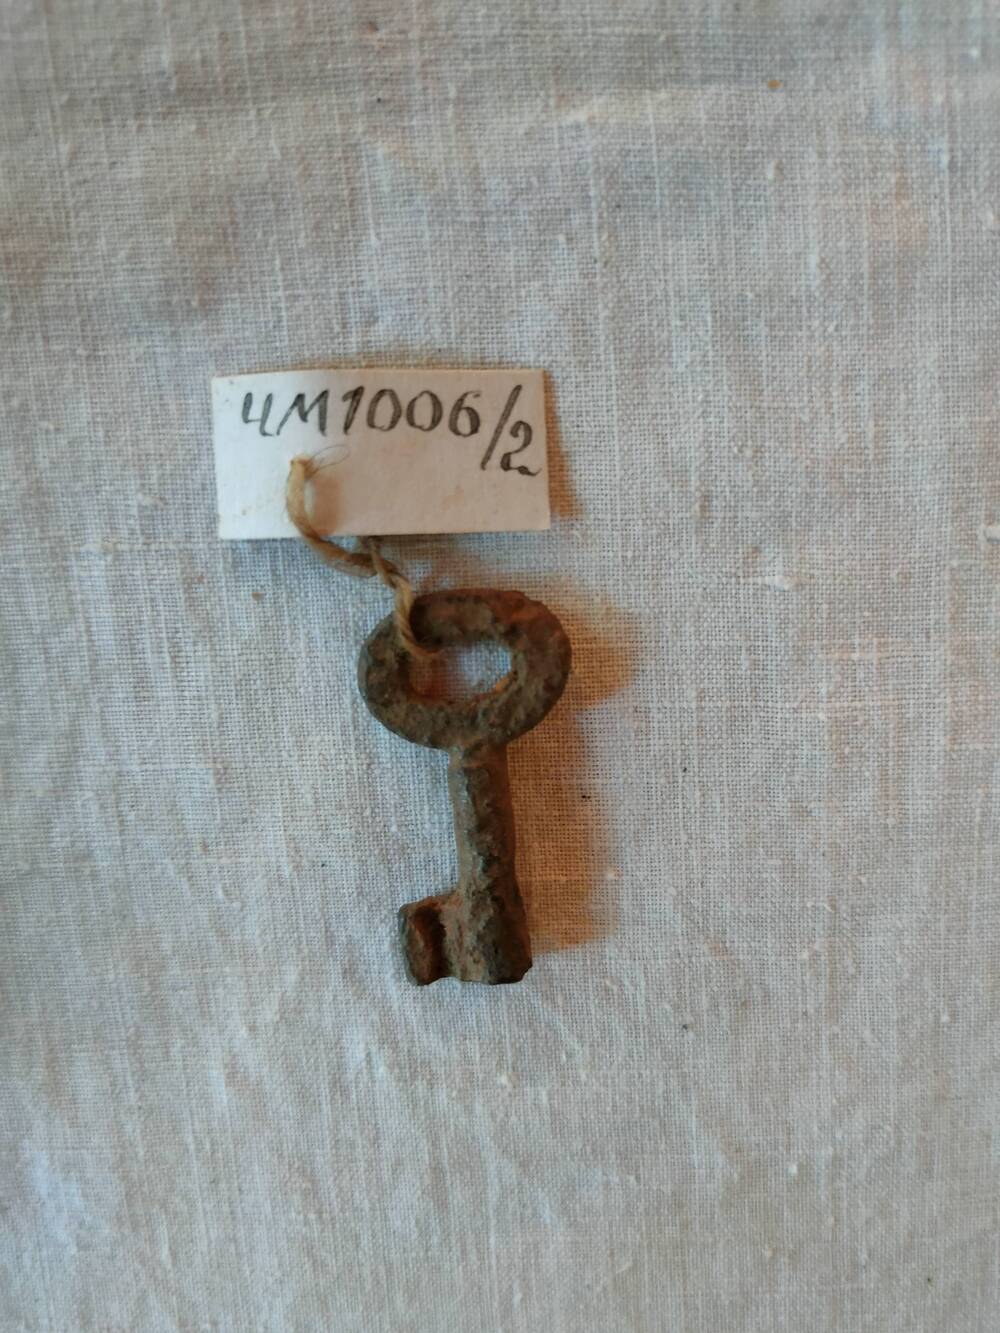 Ключ.